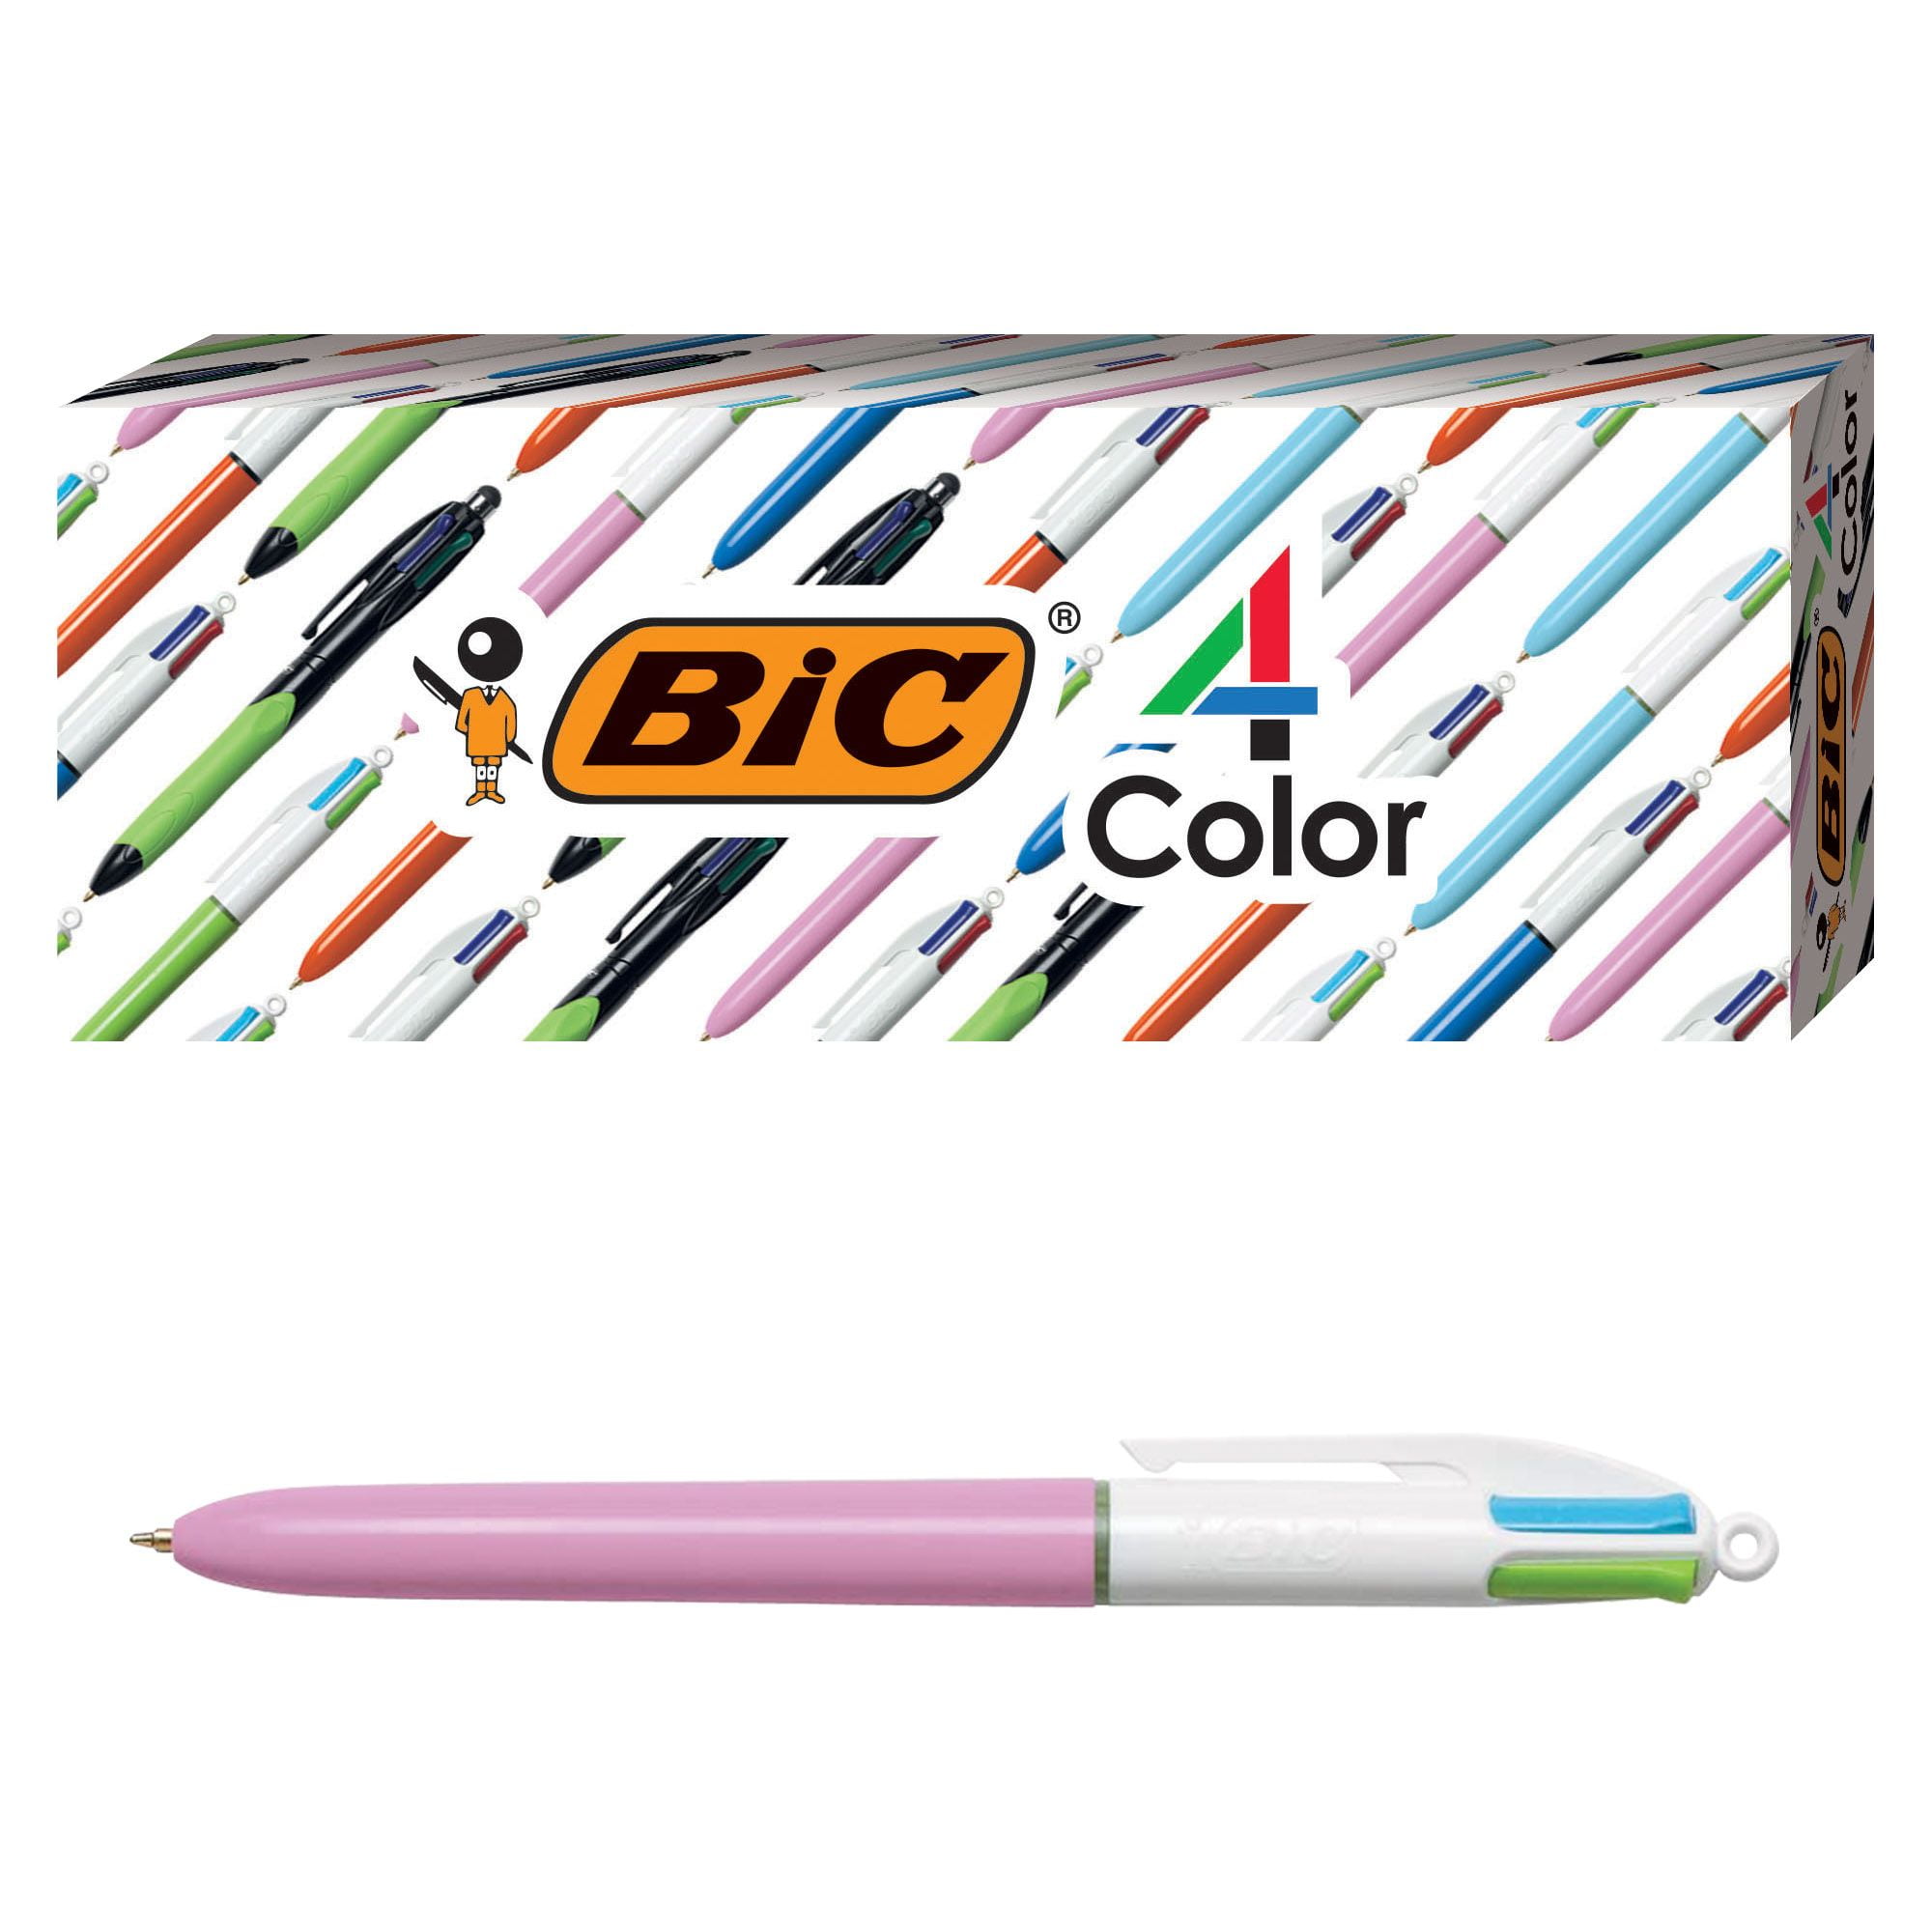 Bic BU3AP51-ASSORTD 1.0mm BU3 Retractable Ball Pen Assorted Colors 5 Count